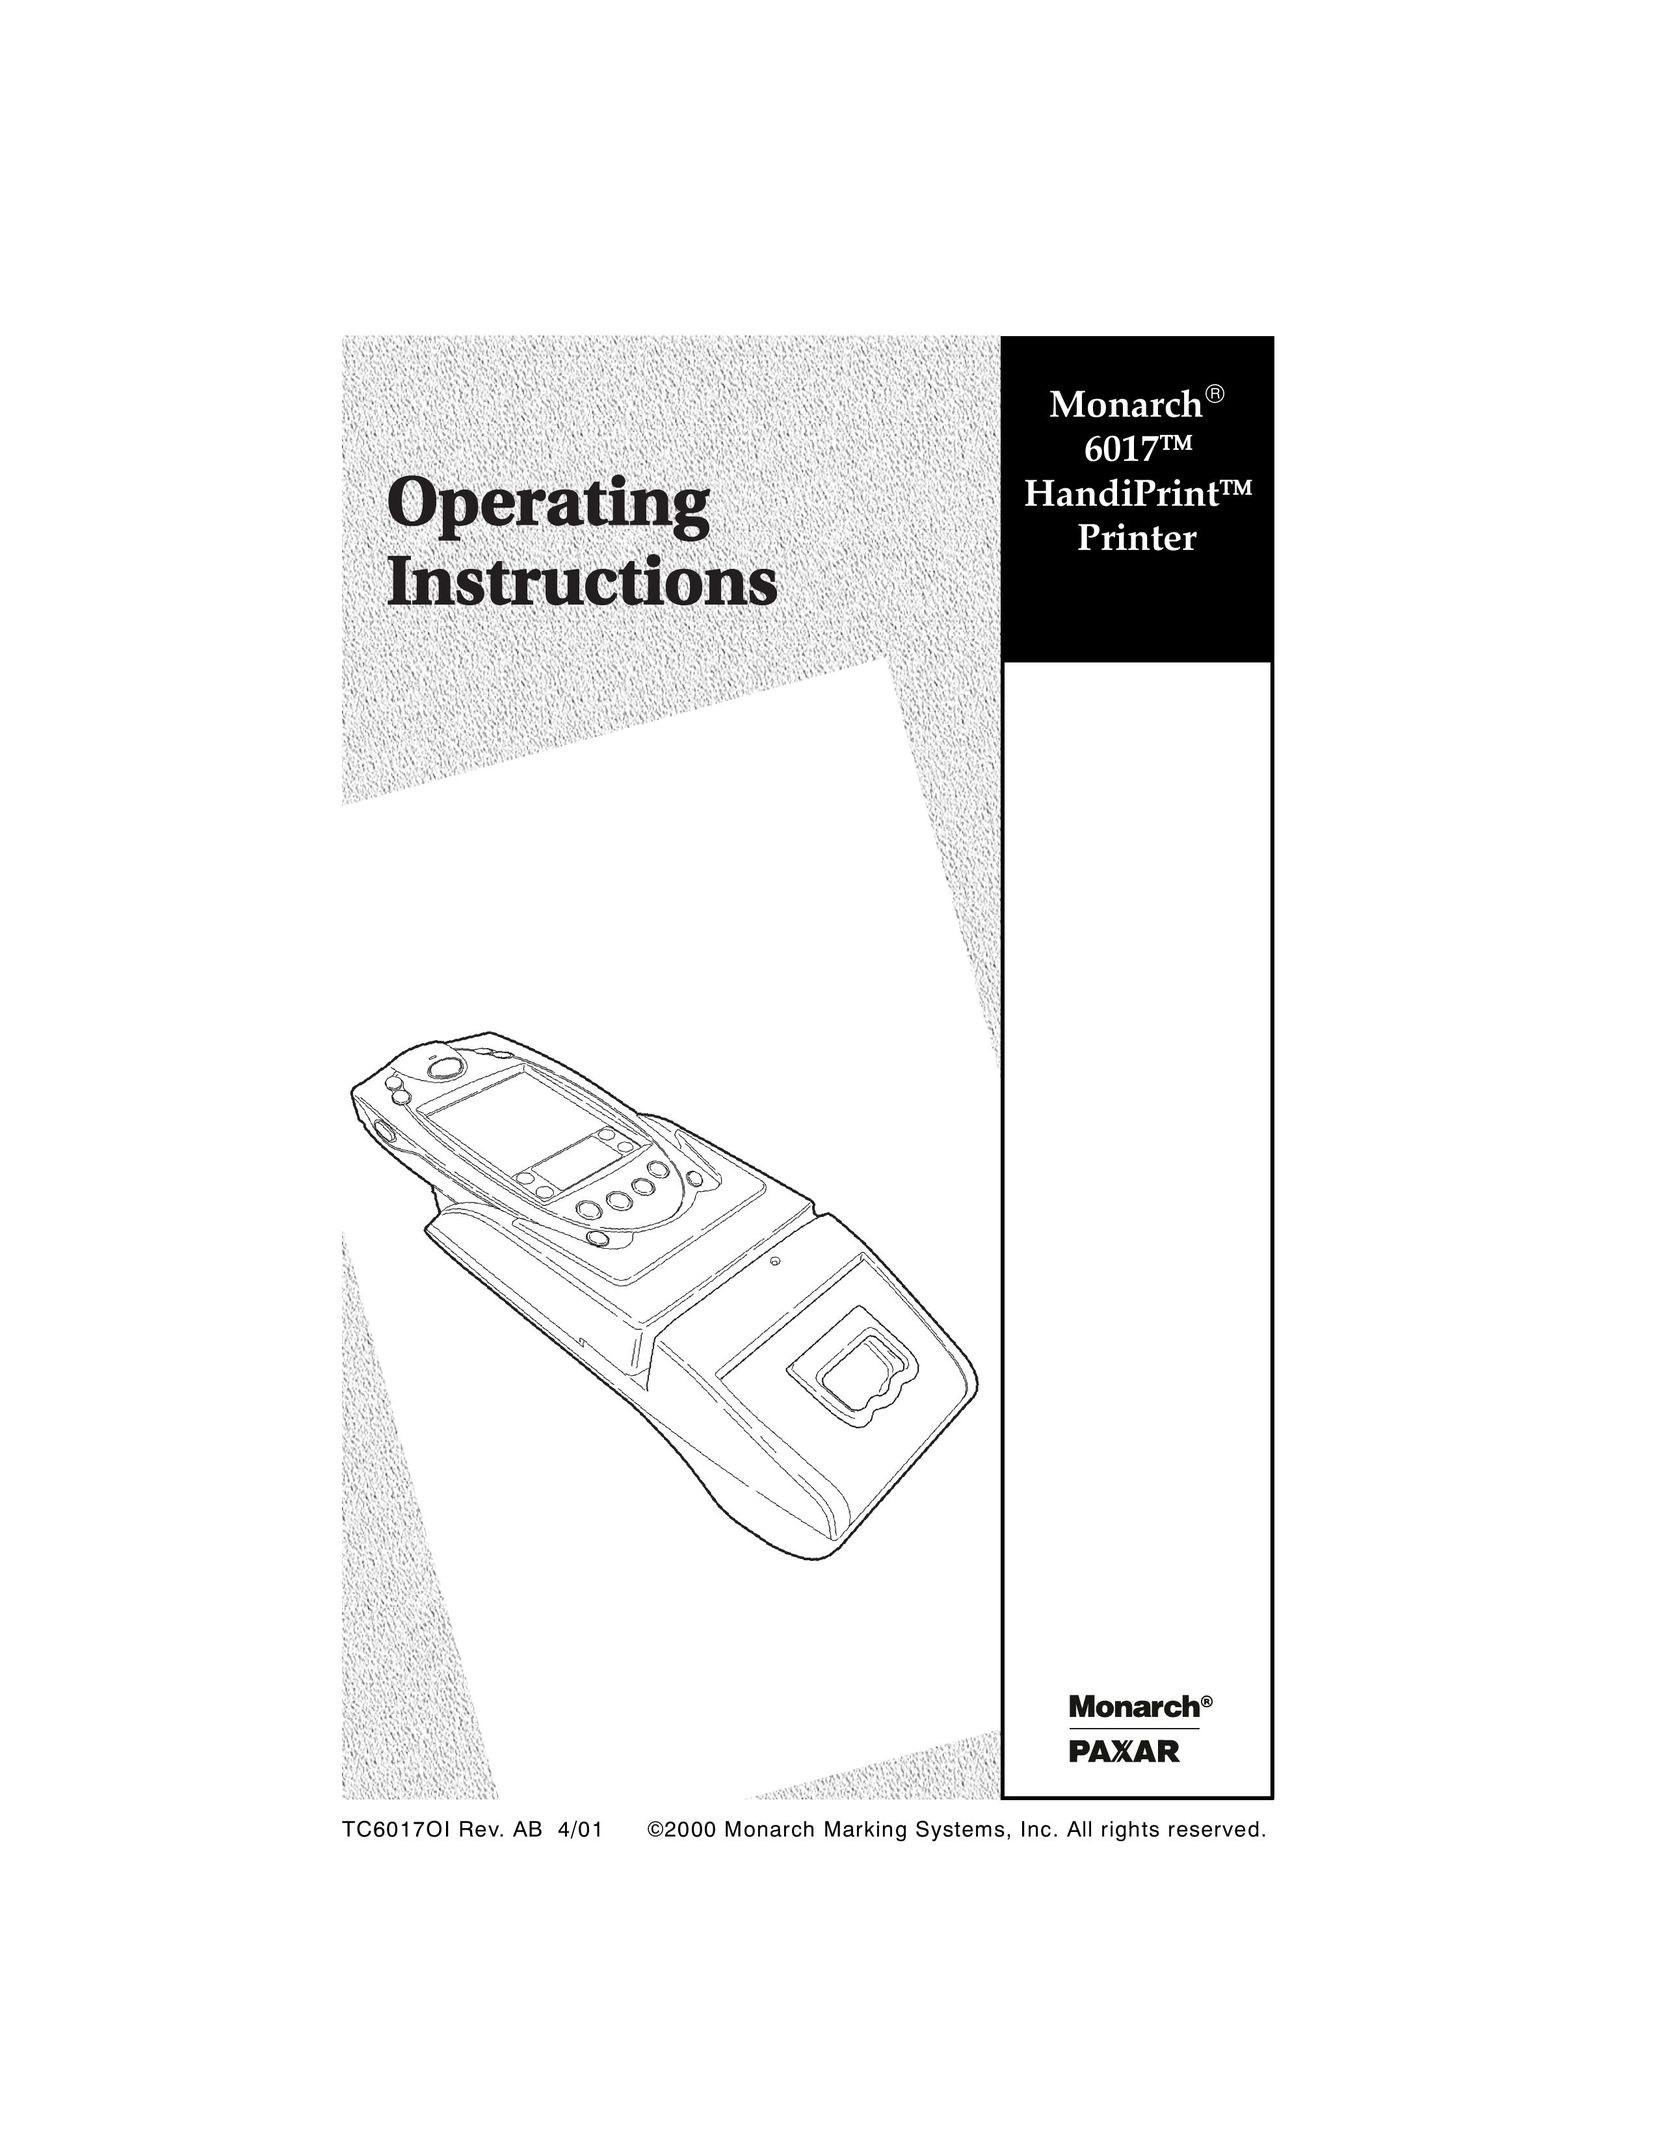 Monarch 6017 Printer User Manual